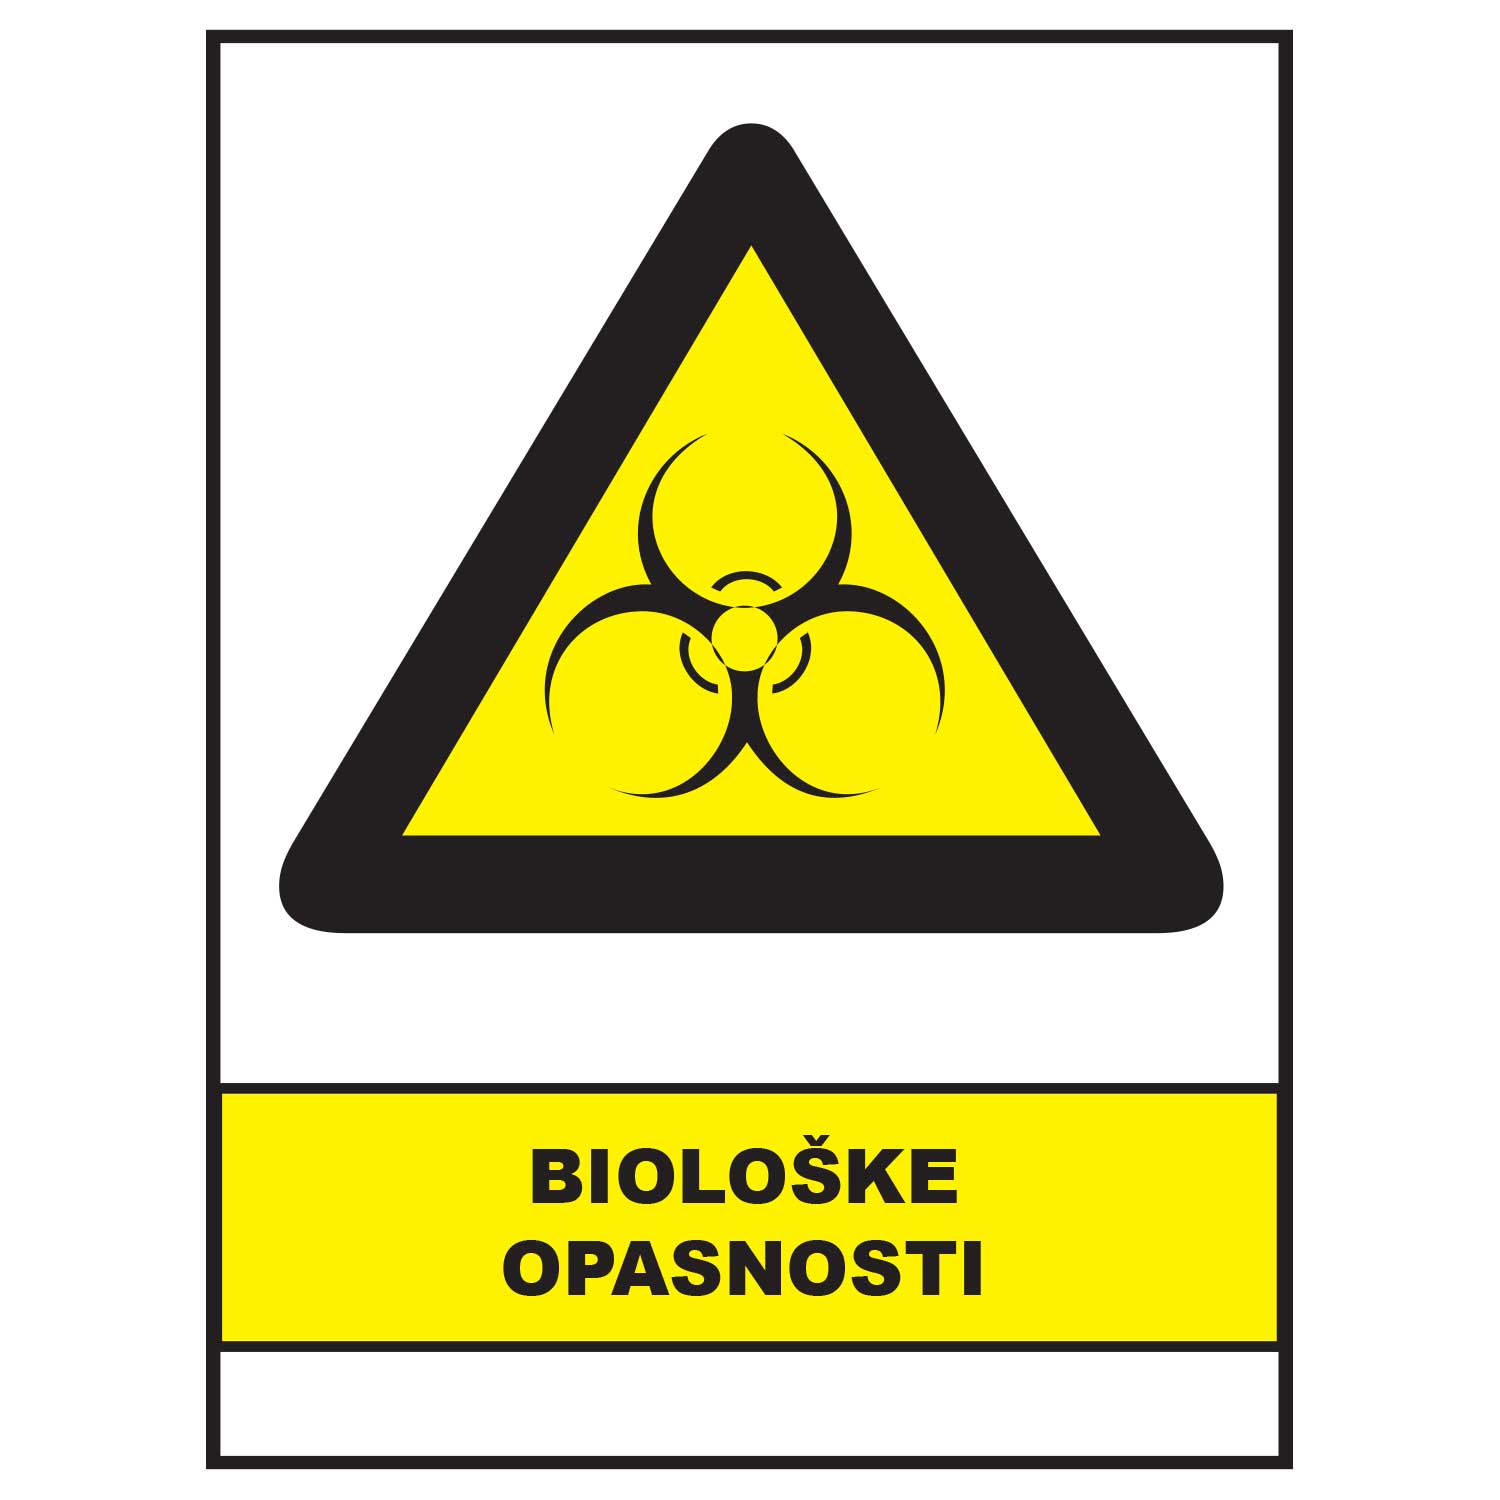 Bioloske opasnosti, znakovi opasnosti, ZP3023